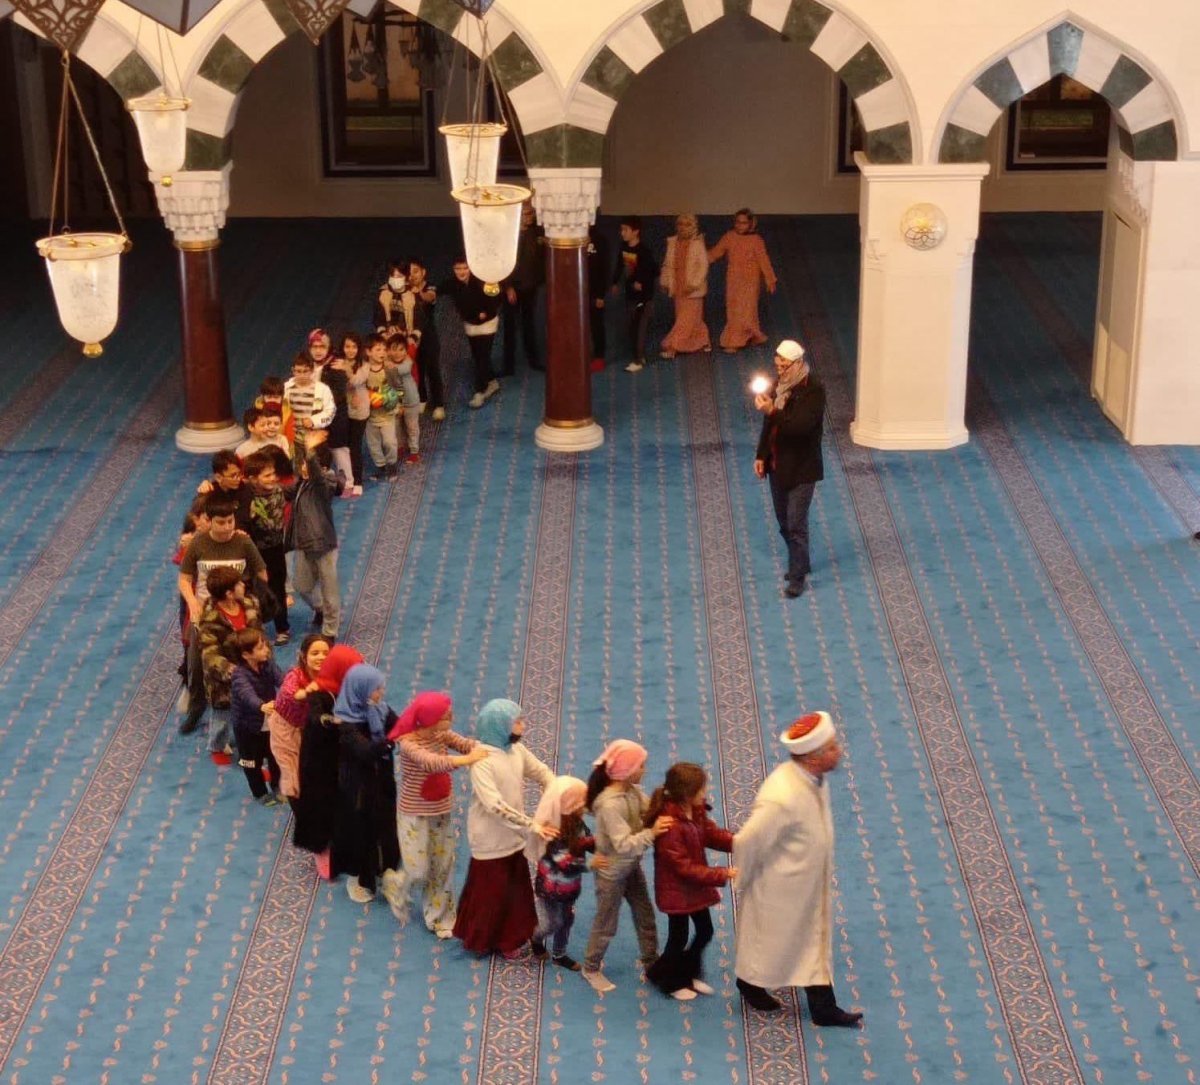 Çocuklara camiyi sevdirmek isteyen imamdan harika yöntem: 'Kutu kutu pense'